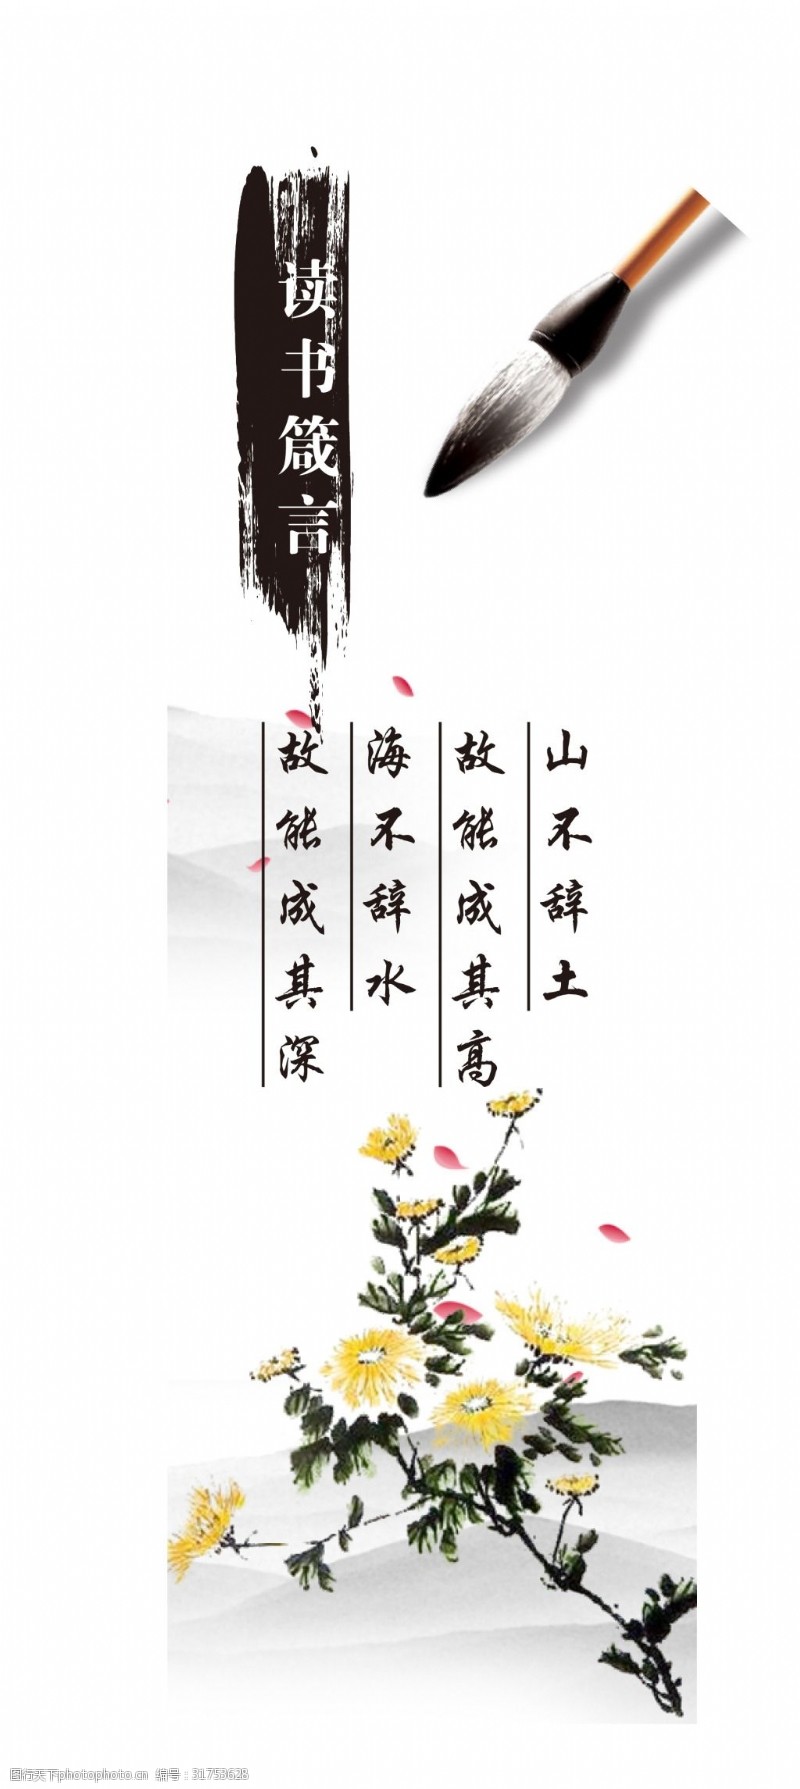 古风书签中国风水墨书签元素梅兰竹菊